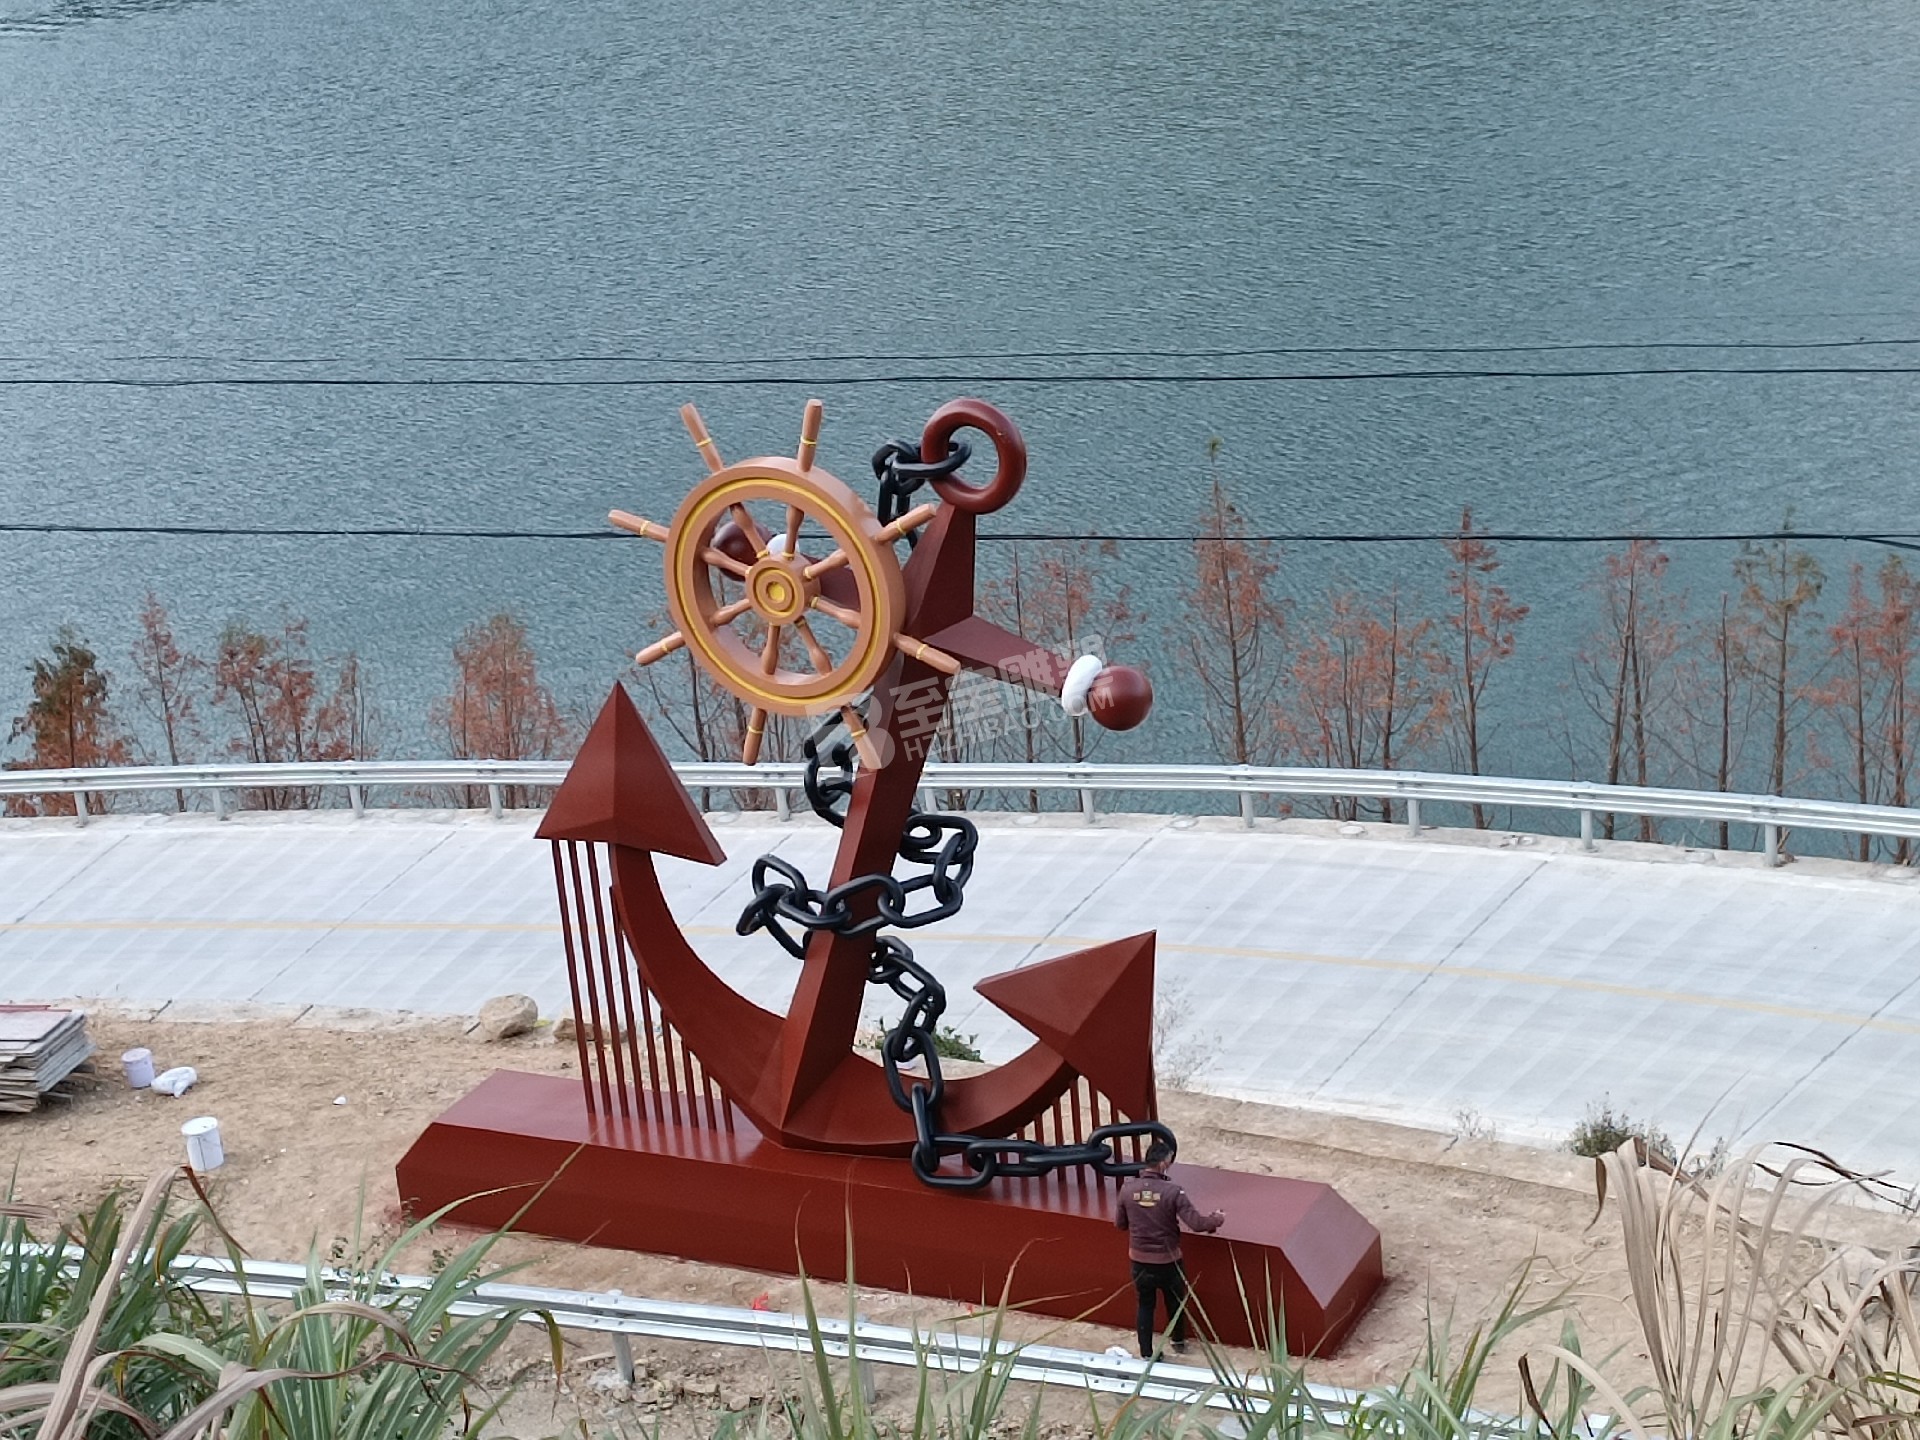 景宁县交旅融合美丽航道及绿色低碳 渡口创建工程 (金 头会渡口 )船锚雕塑